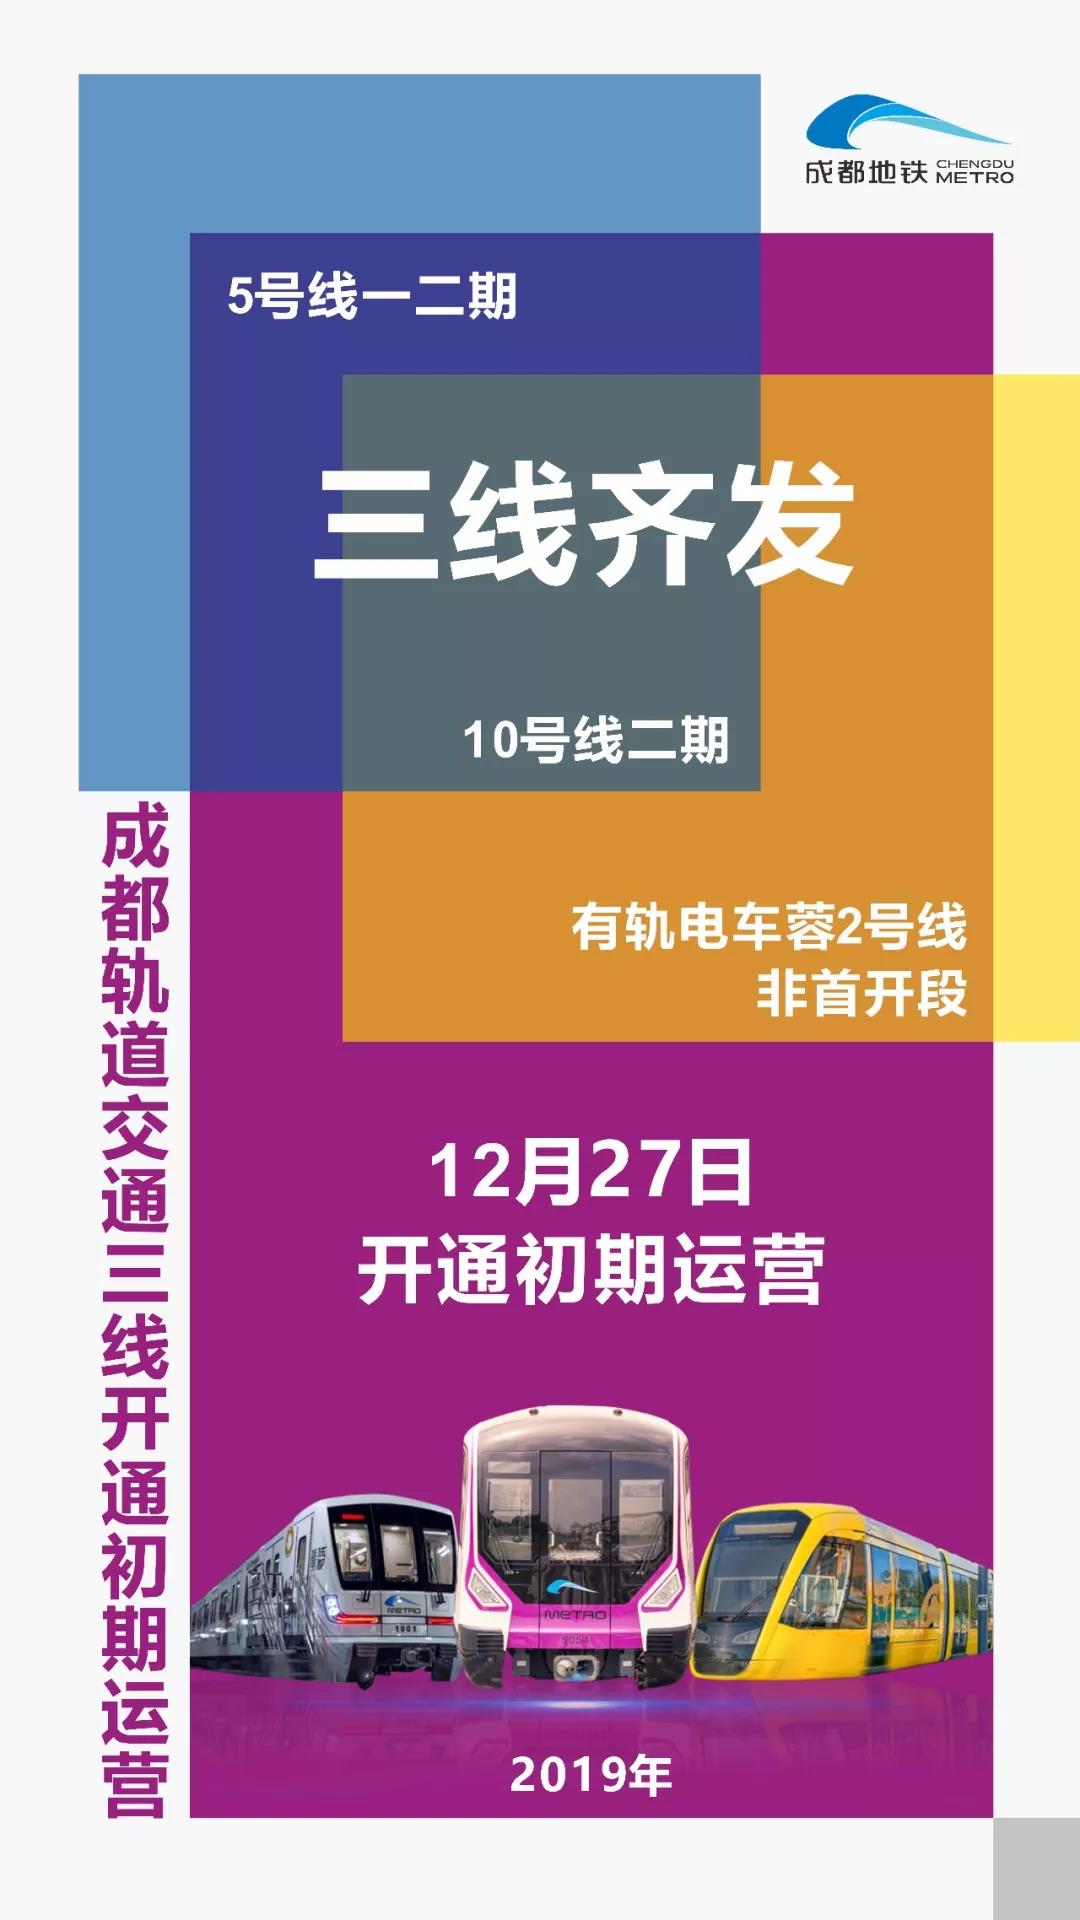 成都地铁8号线二期首列车正式编组下线！ - 成都 - 无限成都-成都市广播电视台官方网站